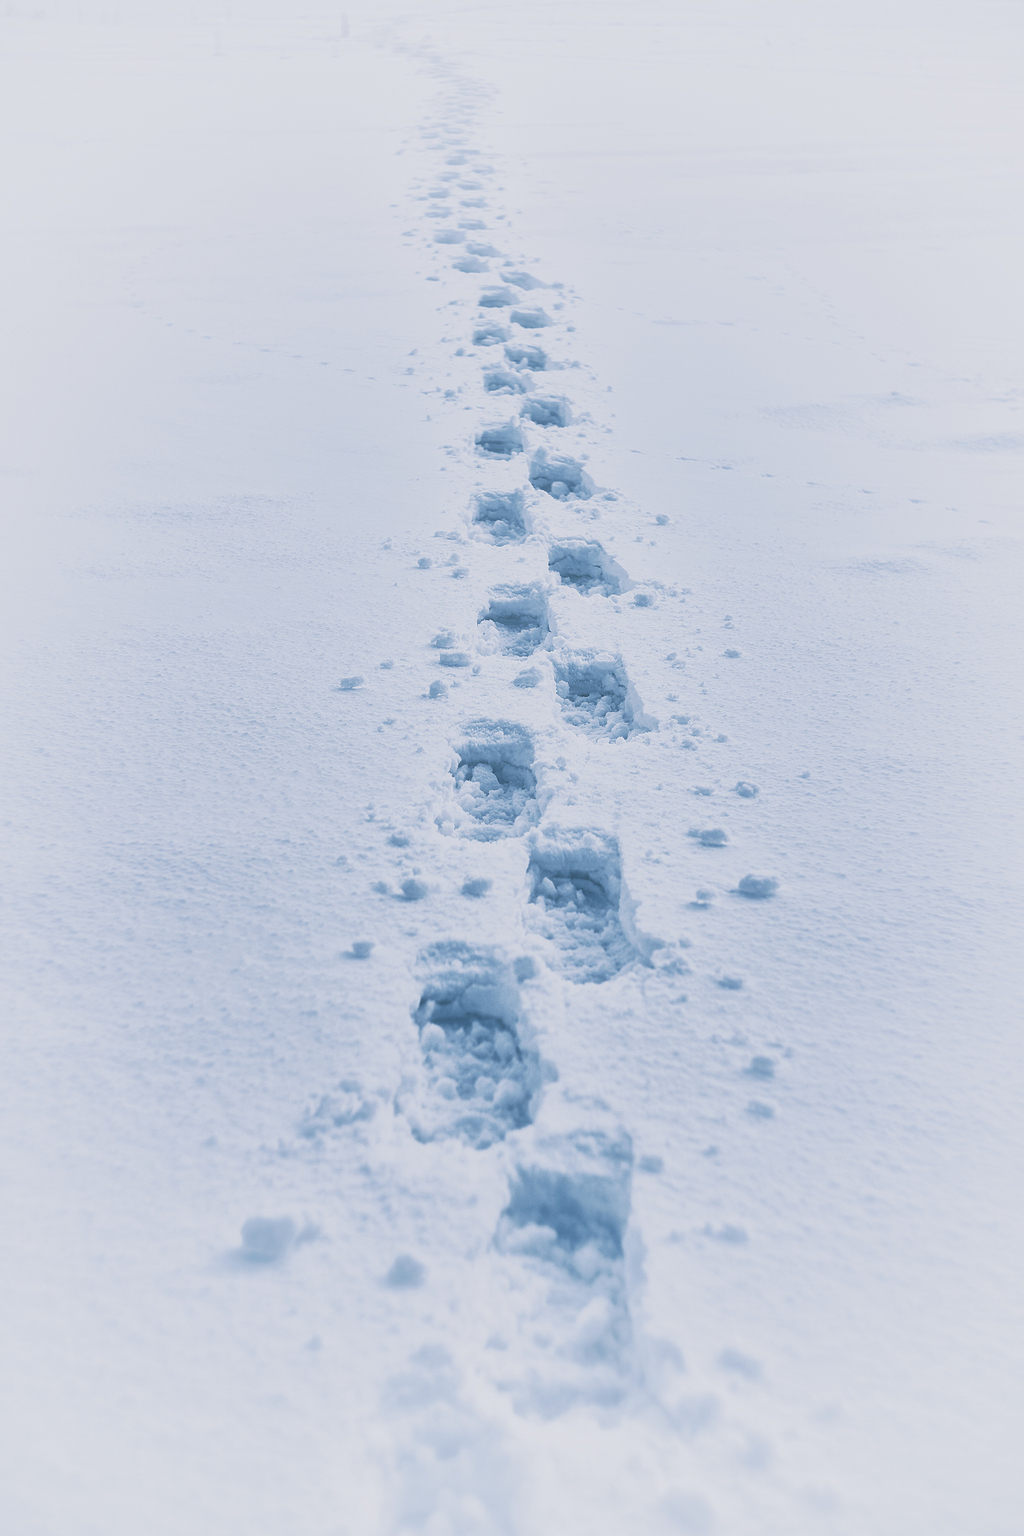 踩在雪上的脚印图片图片